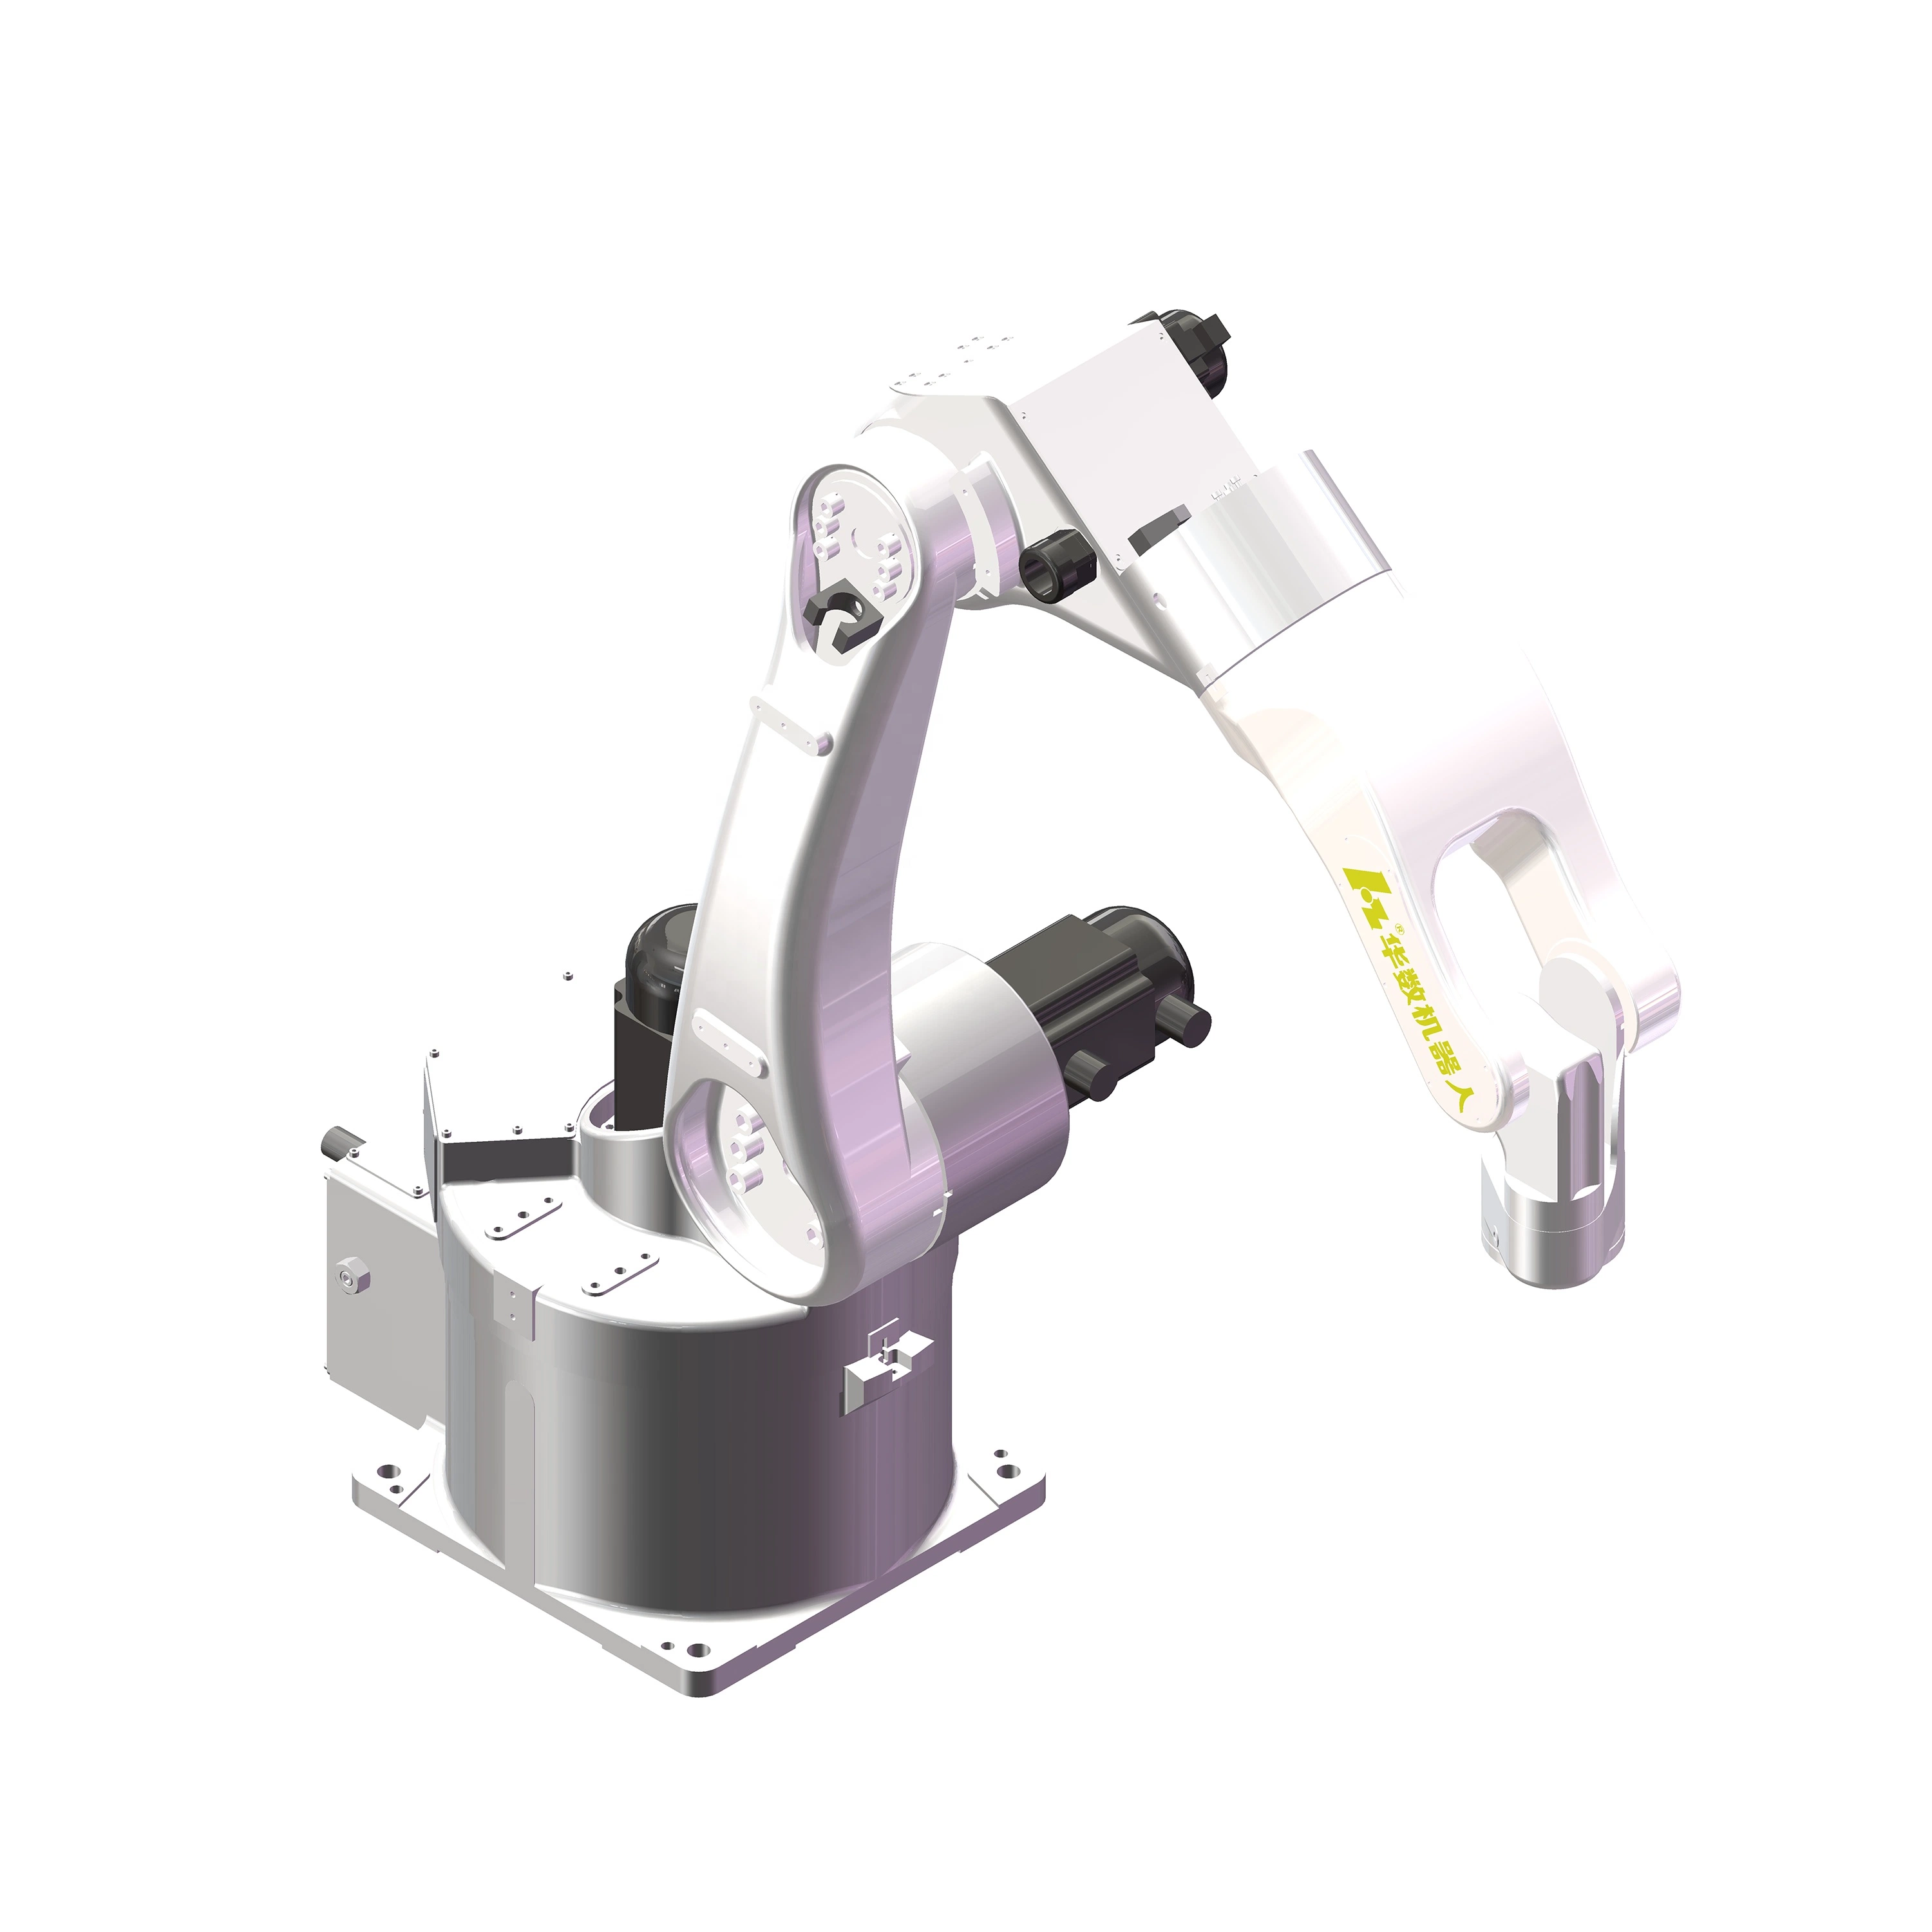 Nuevas soldadoras MIG Jh605 brazo de robot de soldadura MIG